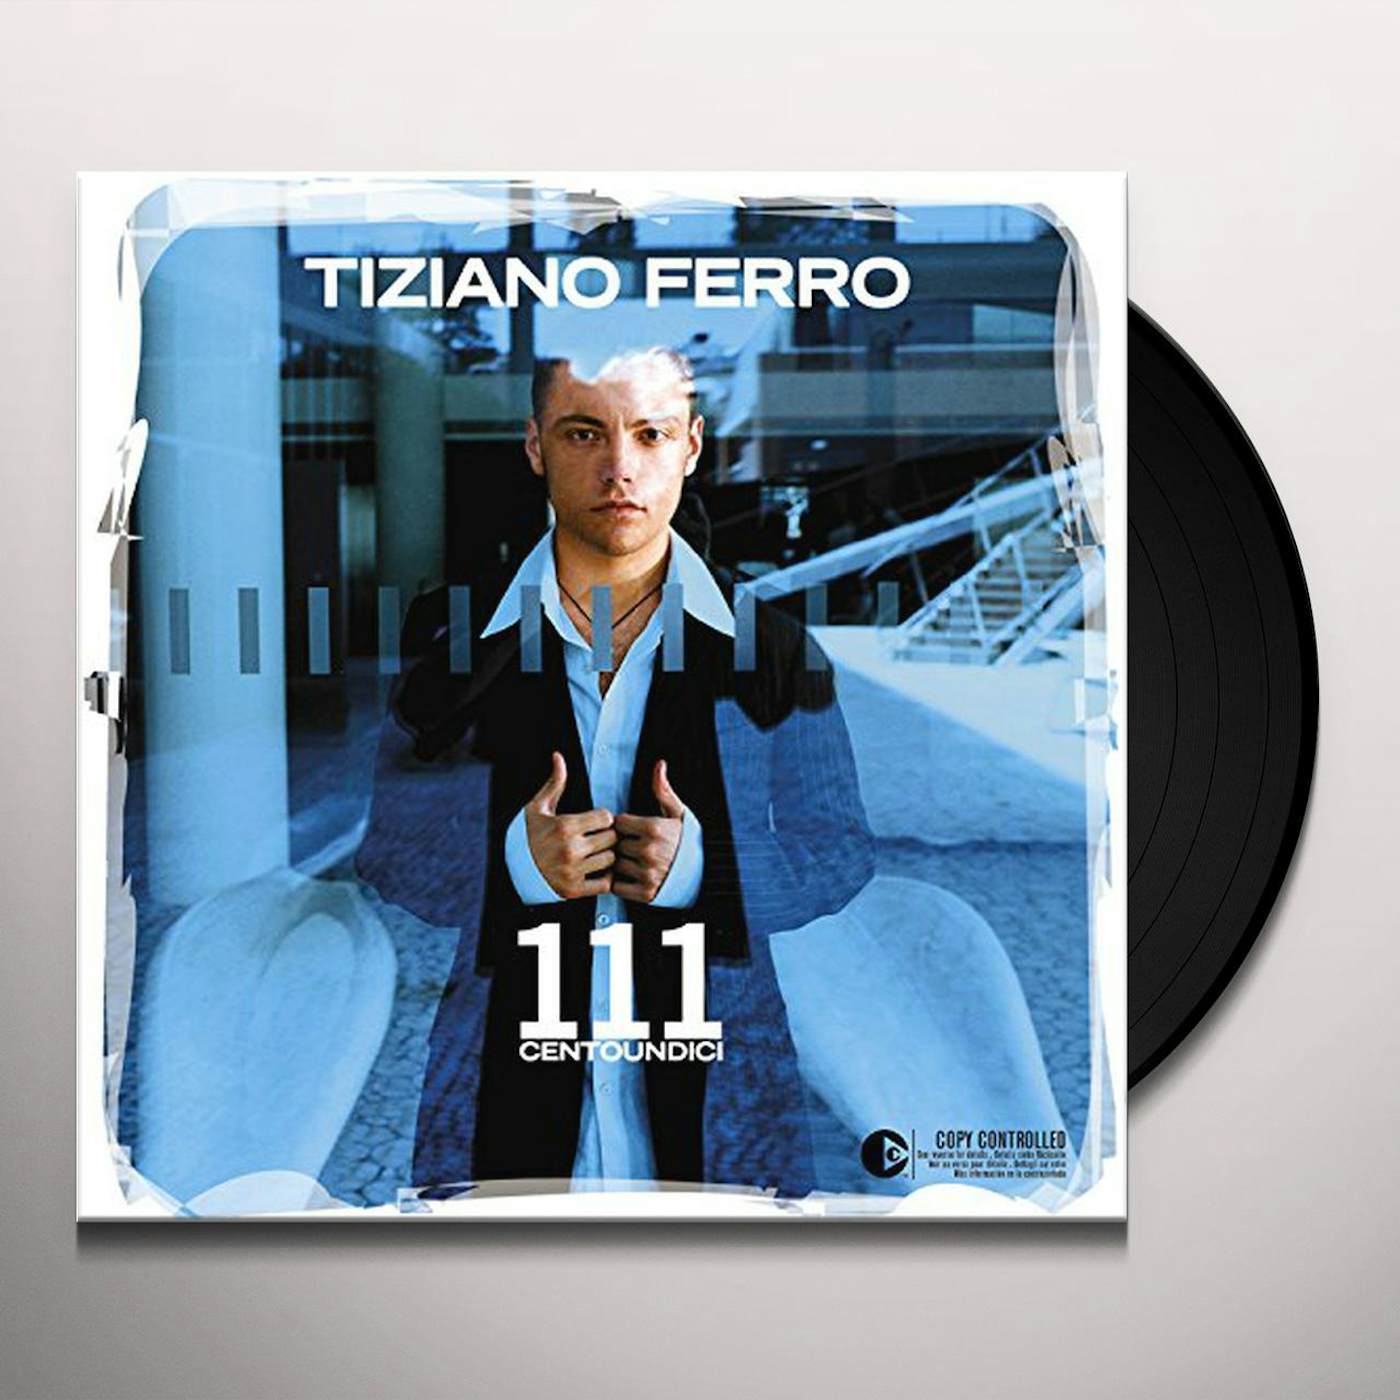 Tiziano Ferro 111 Centoundici Vinyl Record